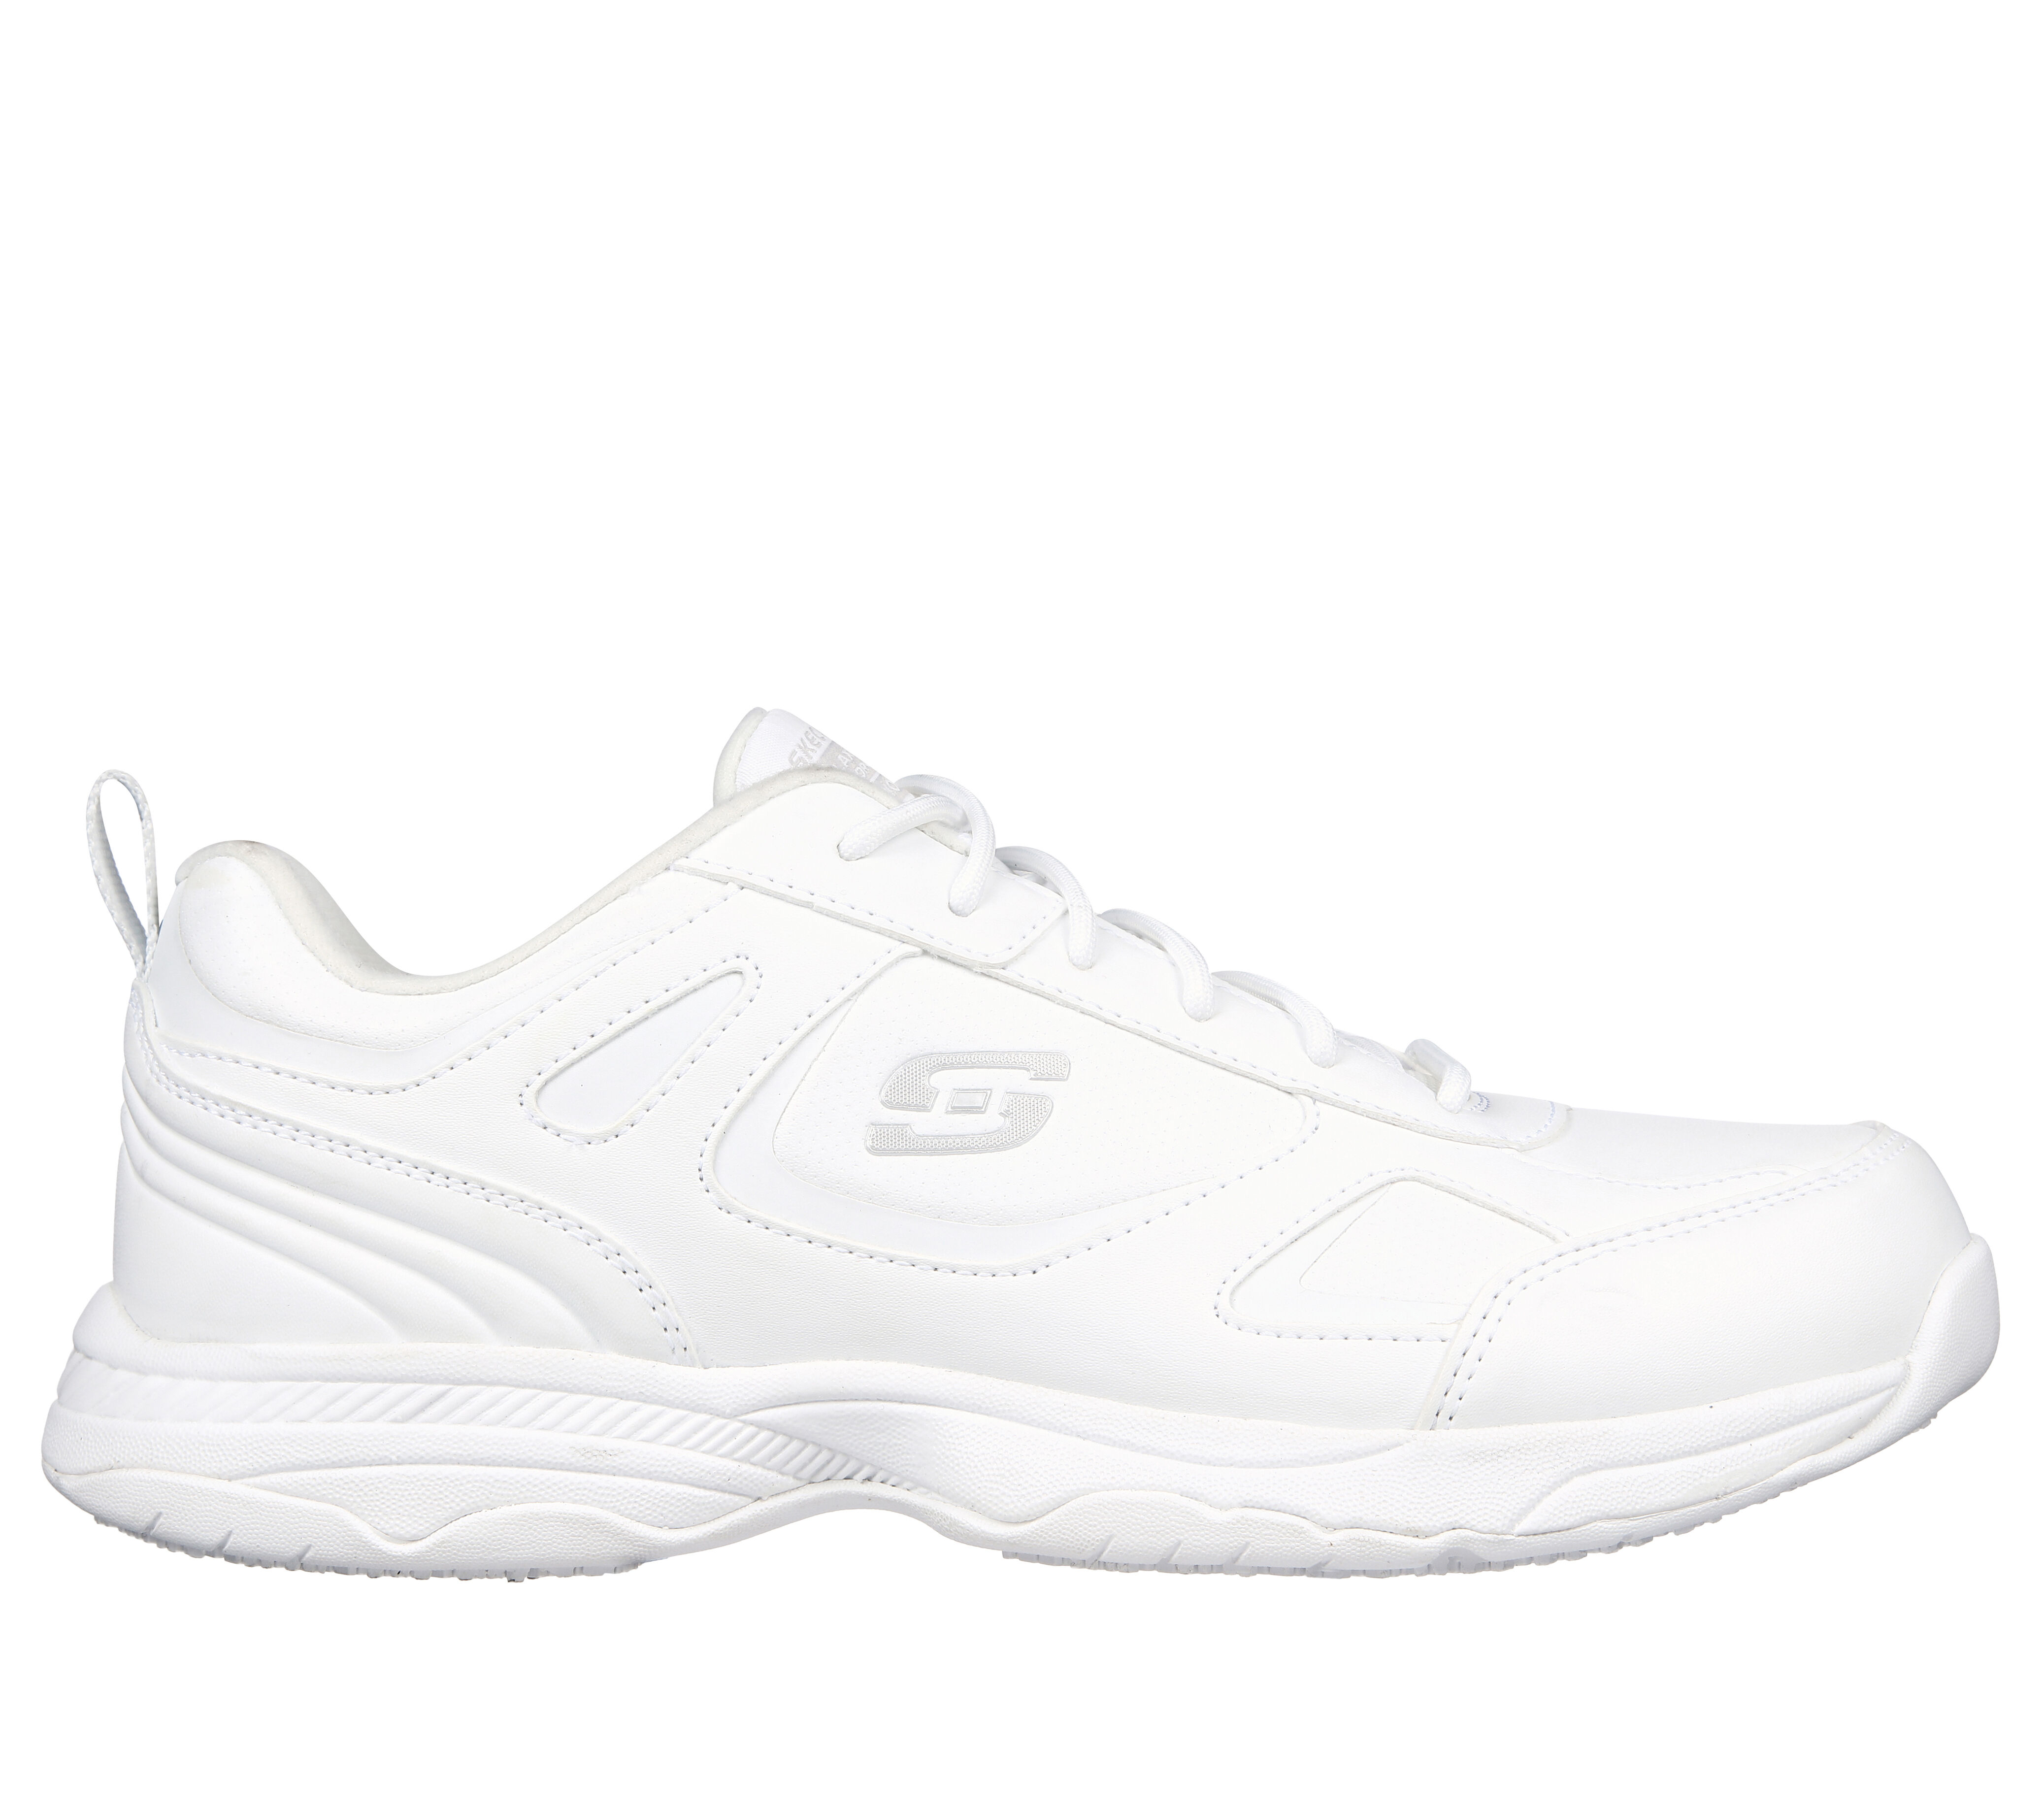 skechers slip resistant shoes white